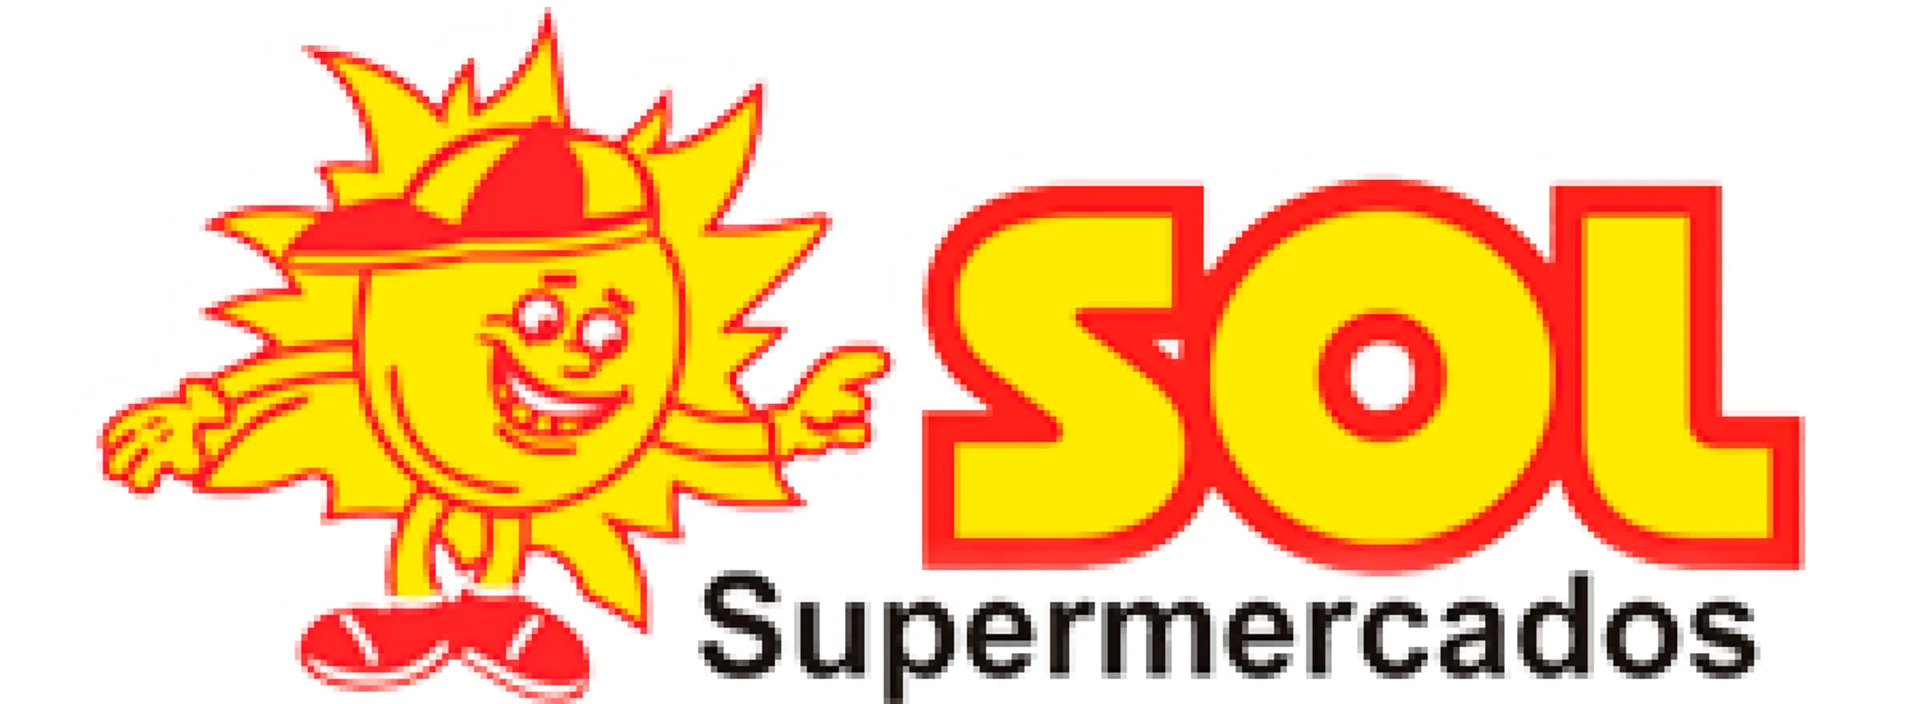 SOL SUPERMERCADOS logo